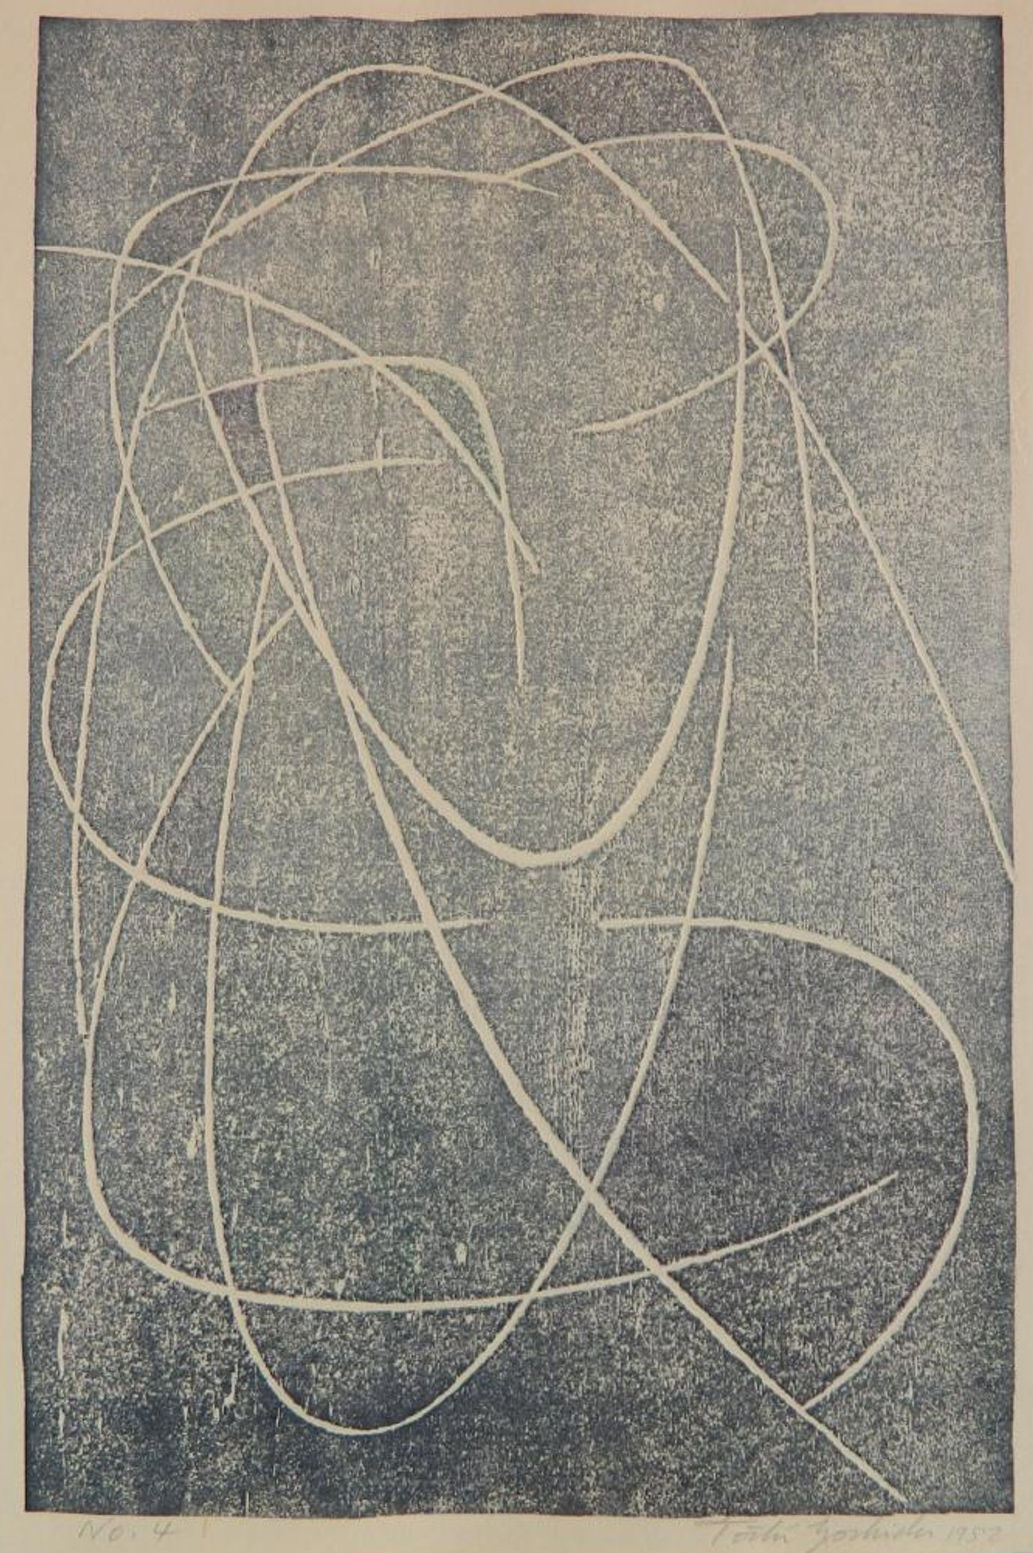 Toshi Yoshida “No. 4” 1952 woodblock print